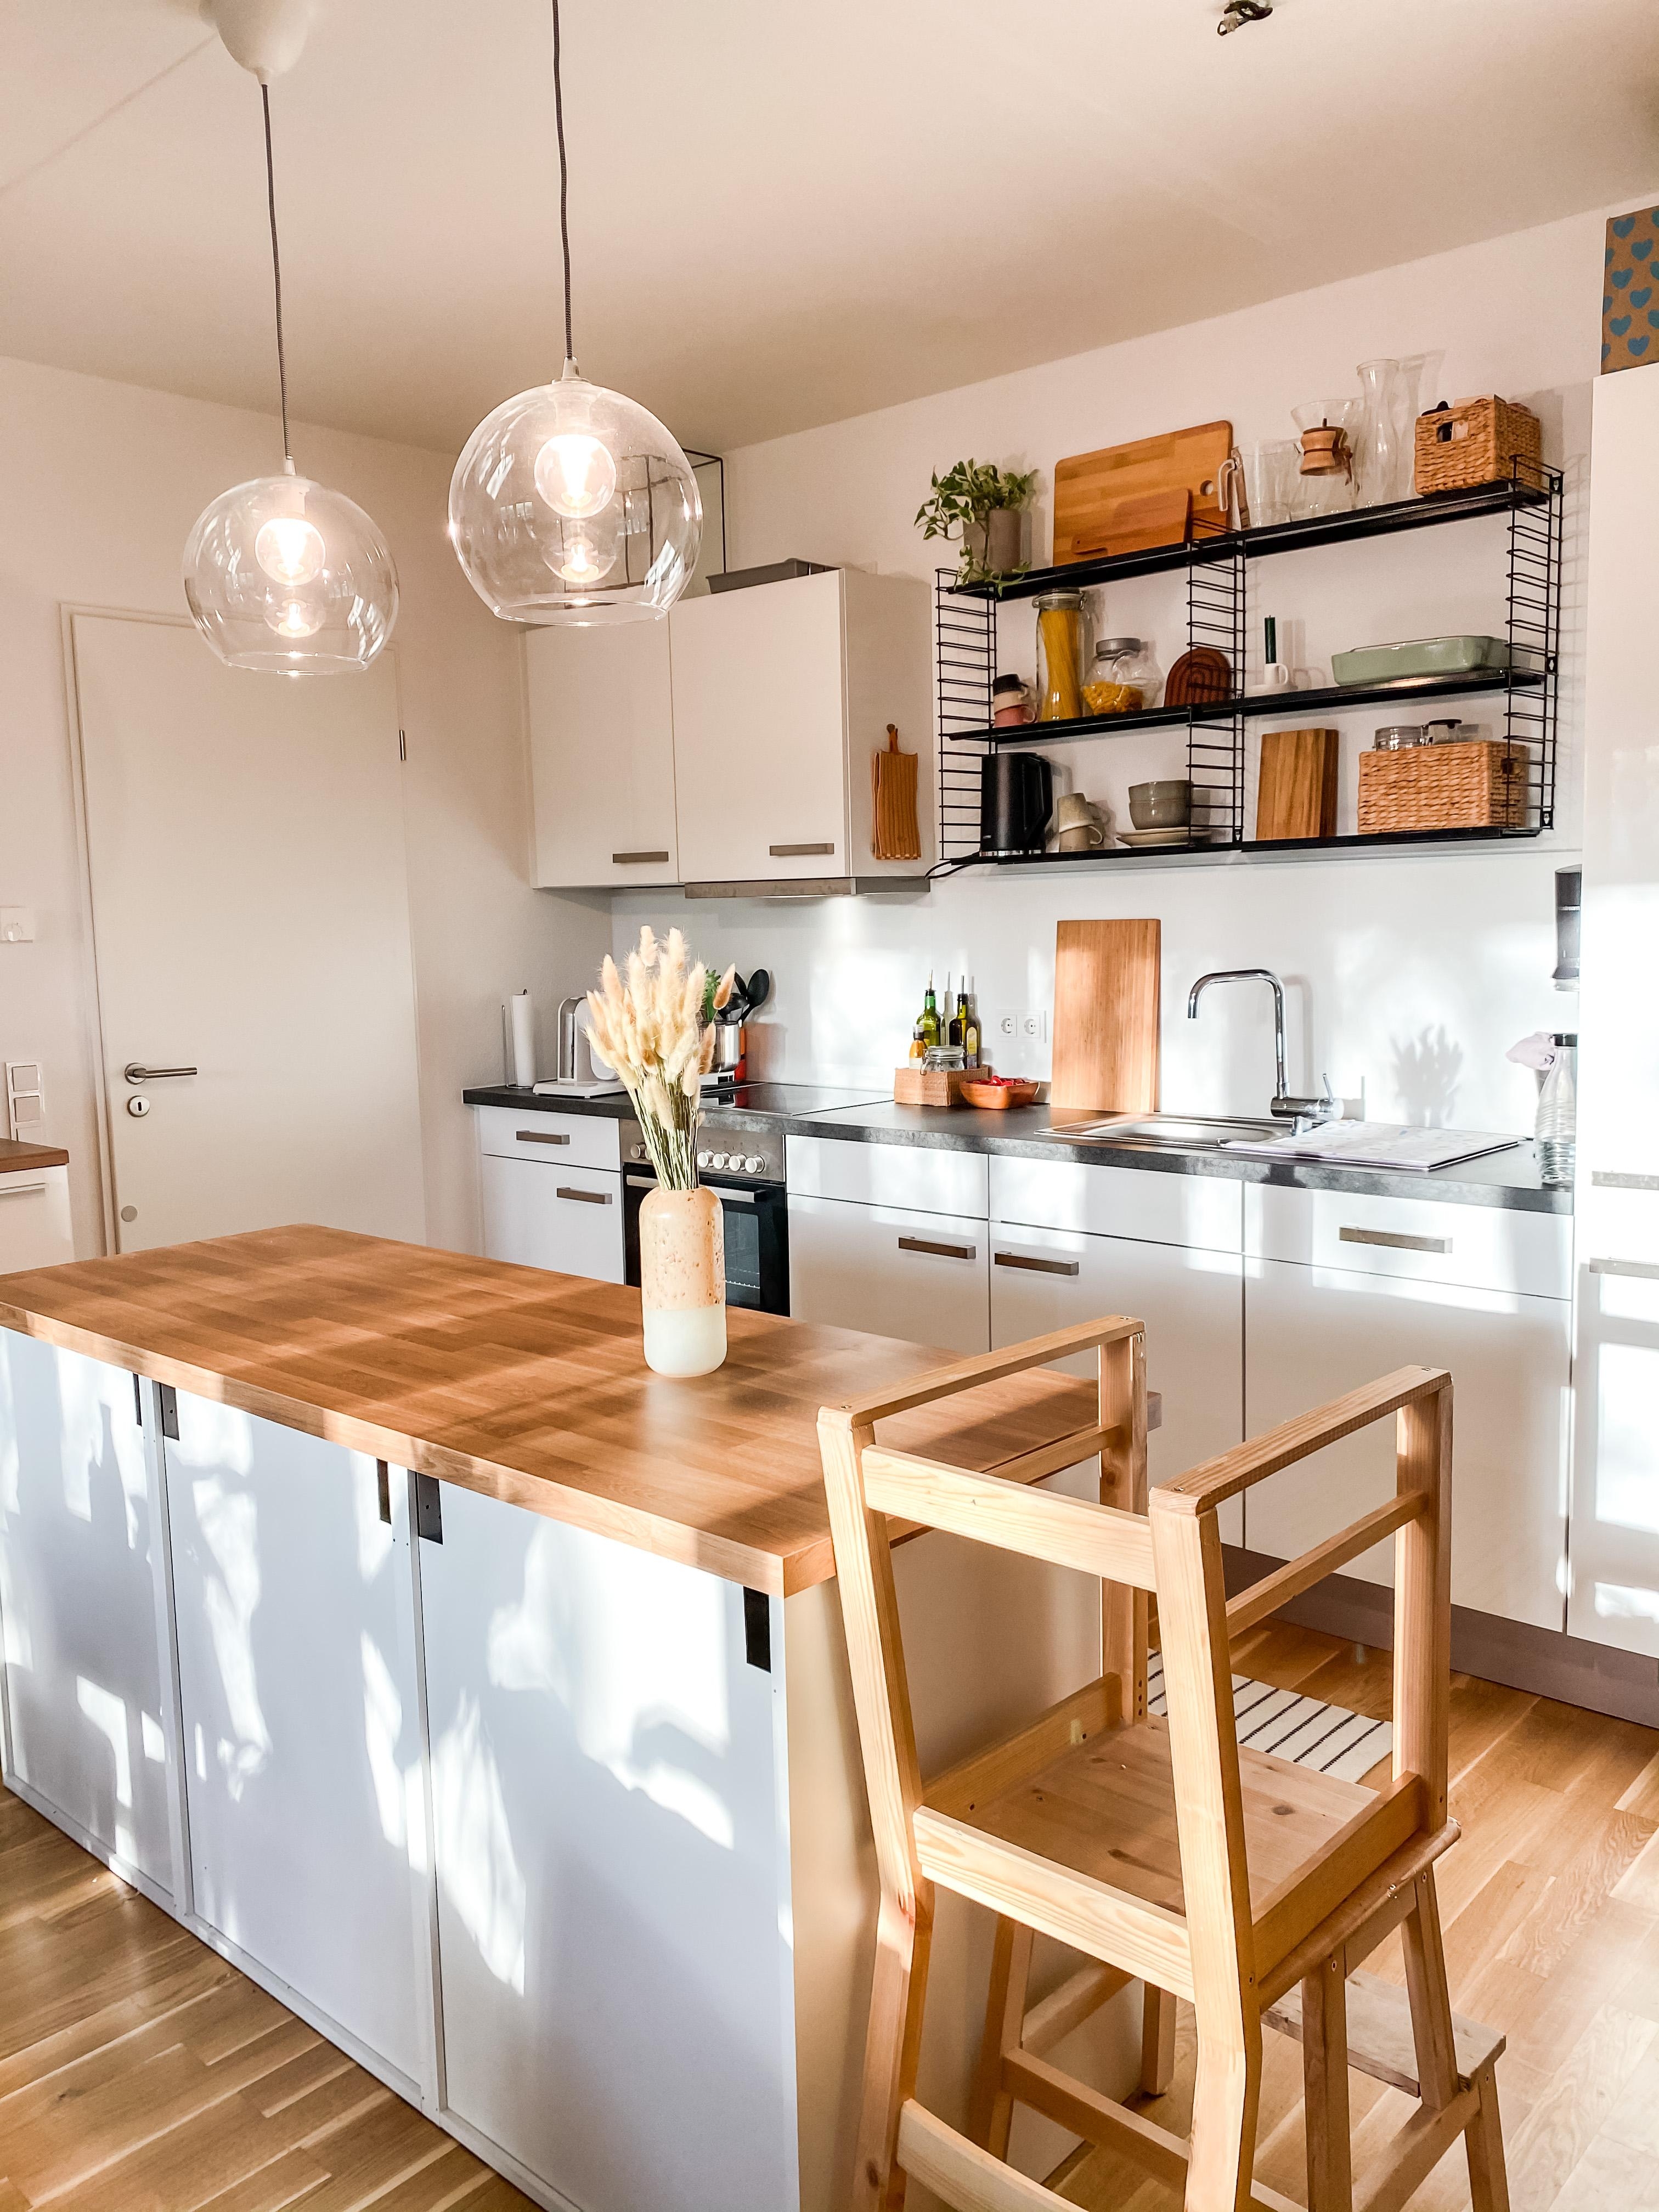 Einblick in die Küche #kitchenview #naturalstyle